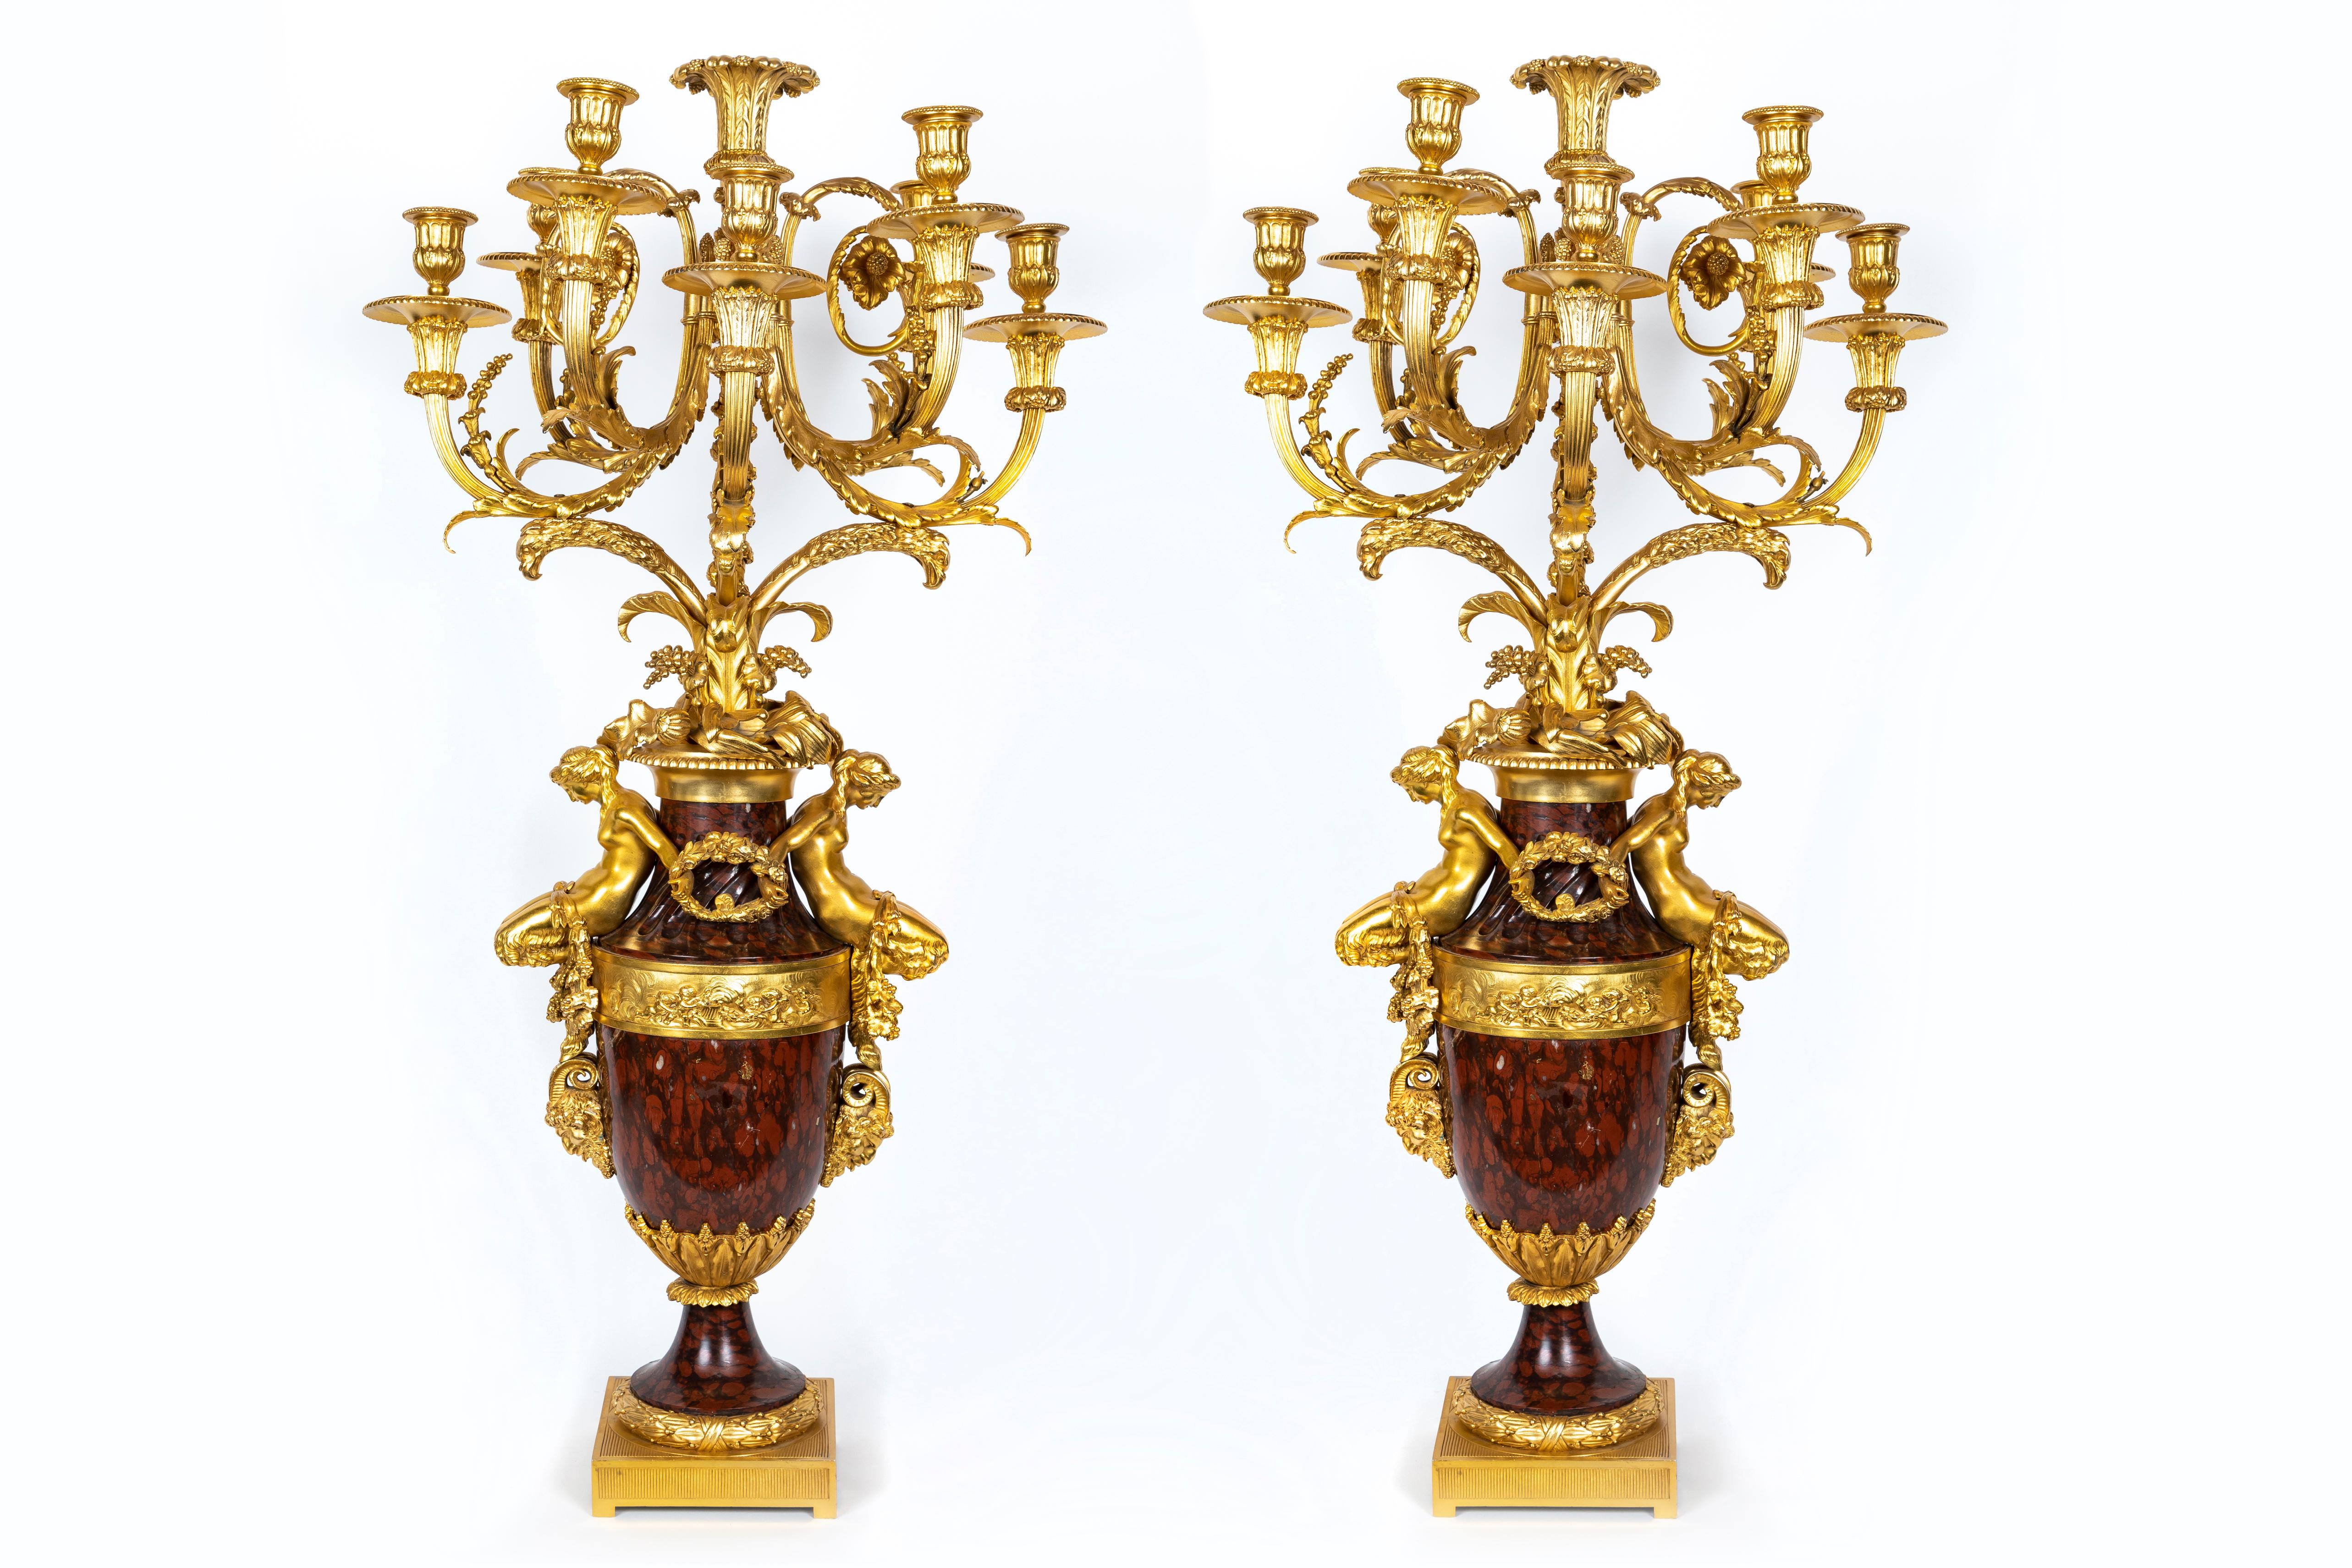 Ein Paar sehr wichtige und große Magnificent Antique Französisch Louis XVI-Stil figuralen vergoldeter Bronze montiert Hand geschnitzt rouge Marmor mehrarmigen Kandelaber von exquisiter Handwerkskunst zugeschrieben Henry Dasson. Jeder große